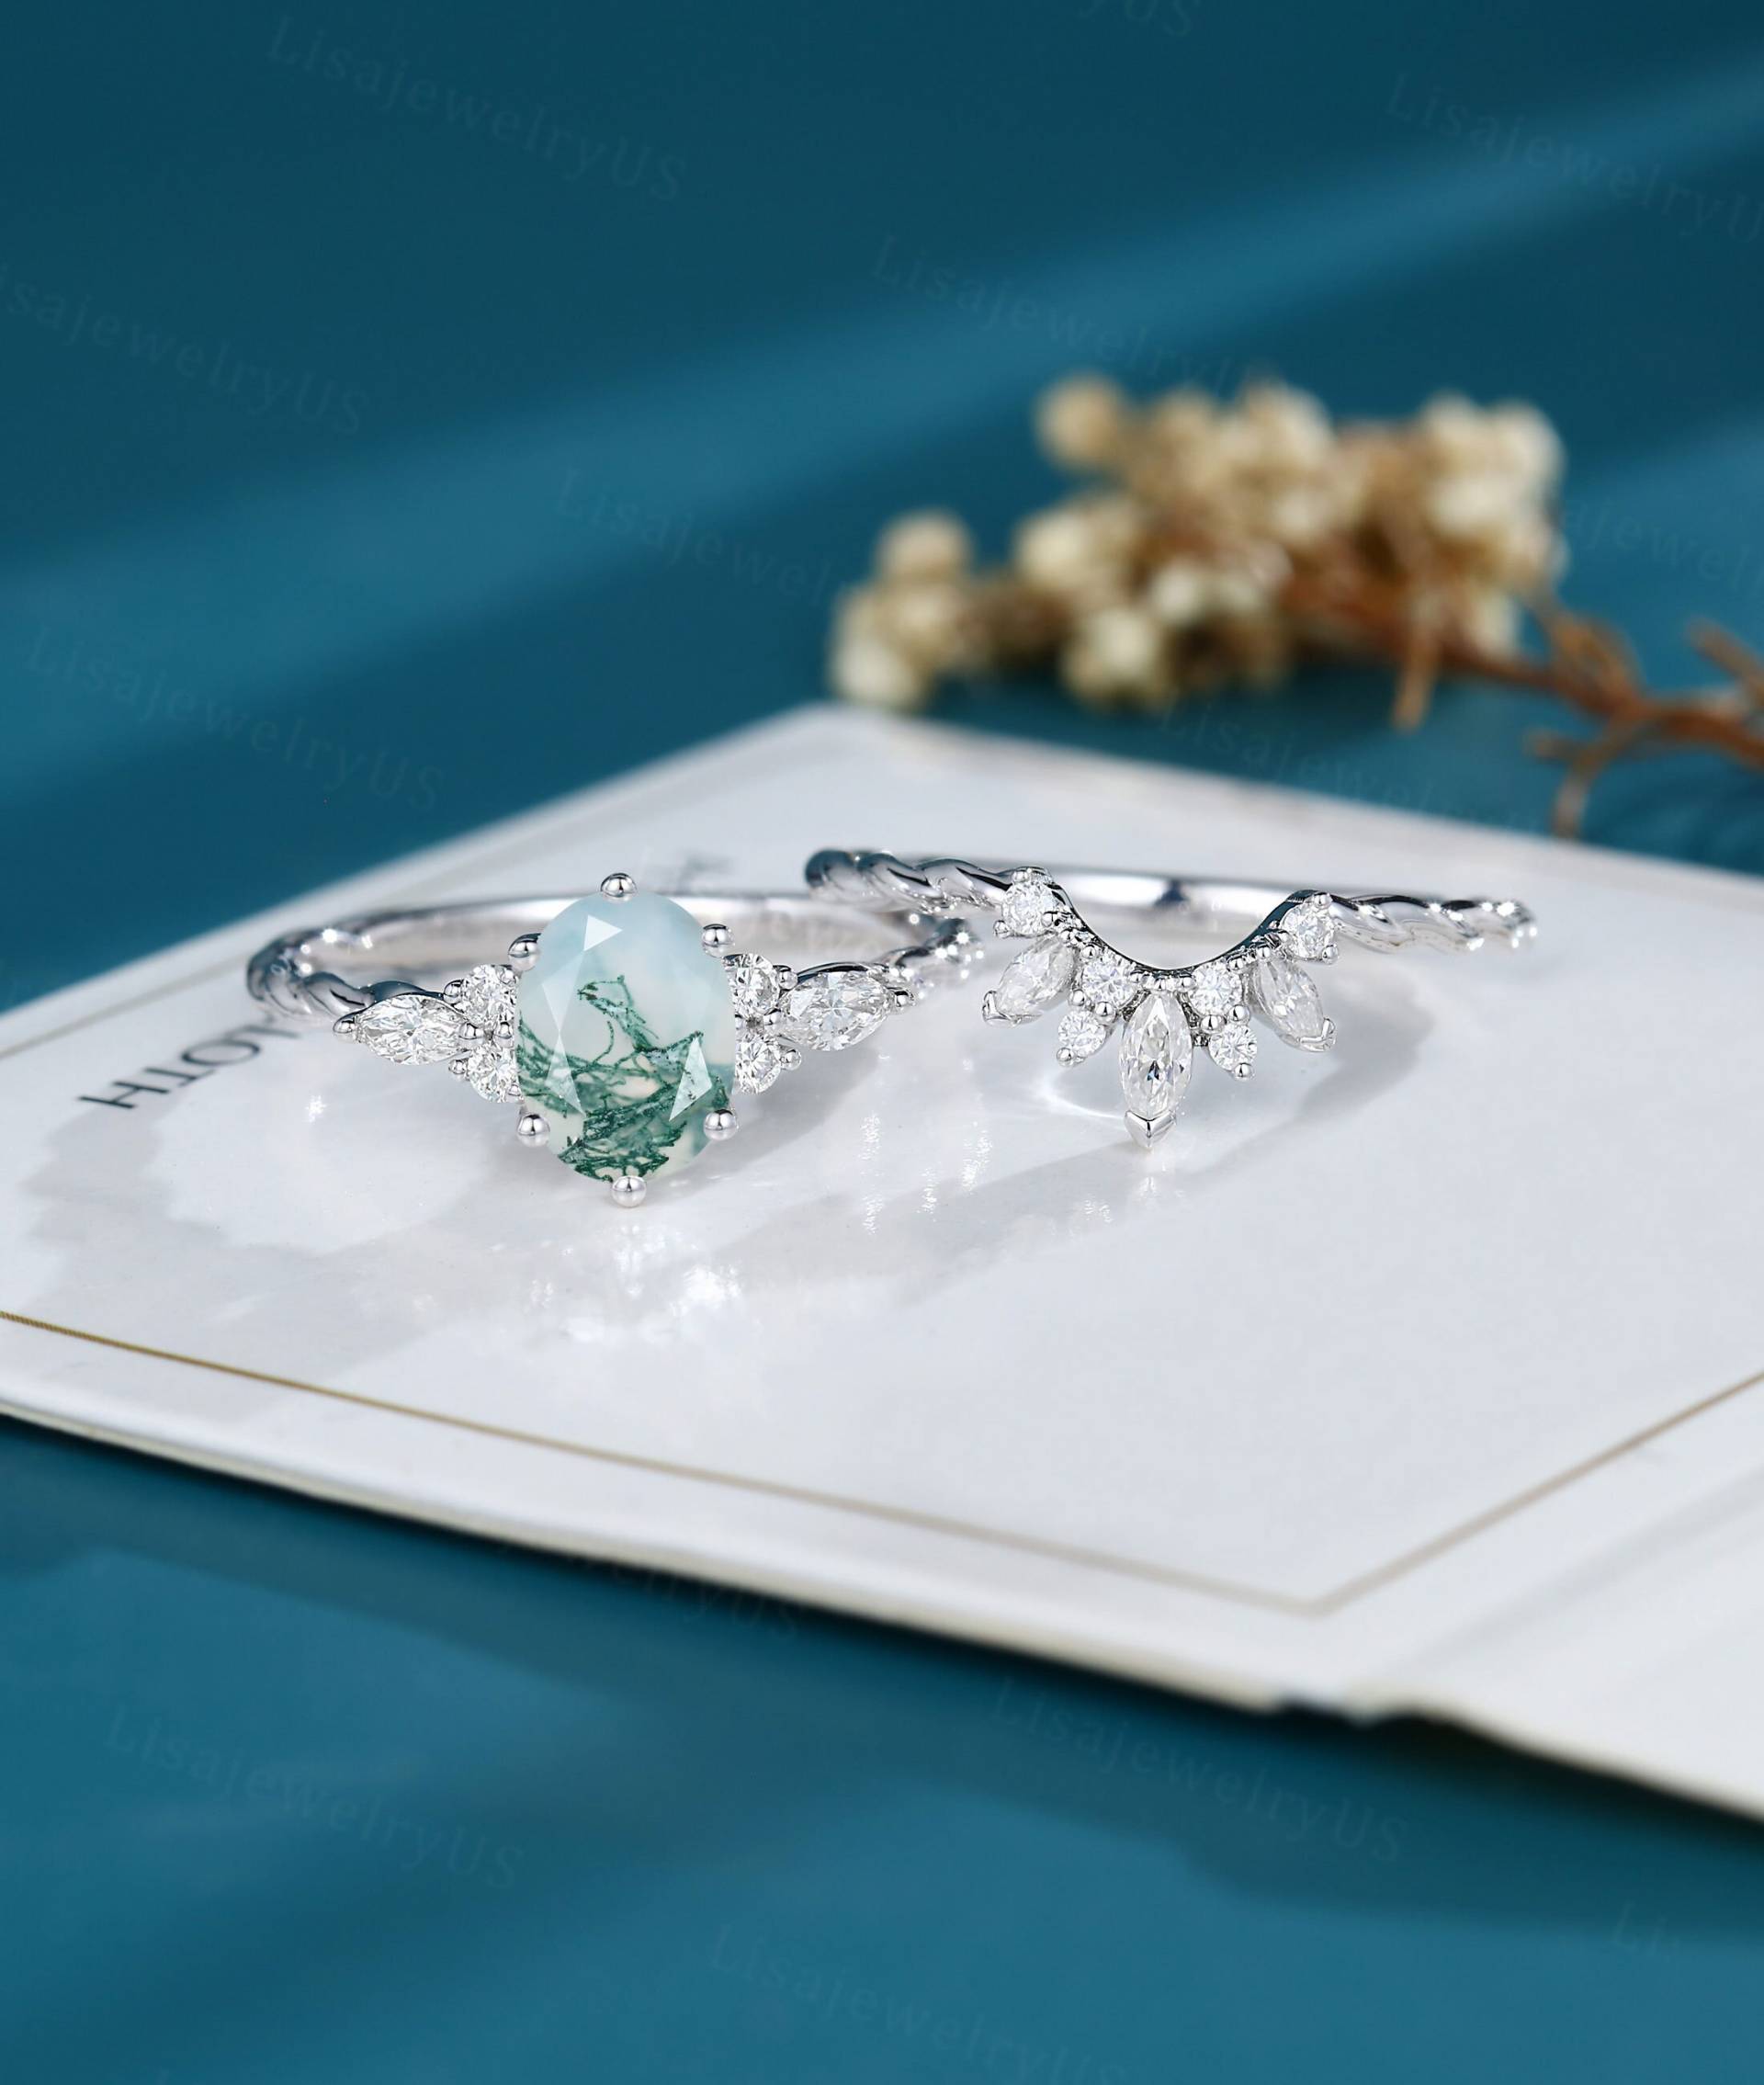 Oval Moosachat Verlobungsring Set Vintage Weißgold Art Deco Zierliche Massive Diamanten Twisted von LisajewelryUS